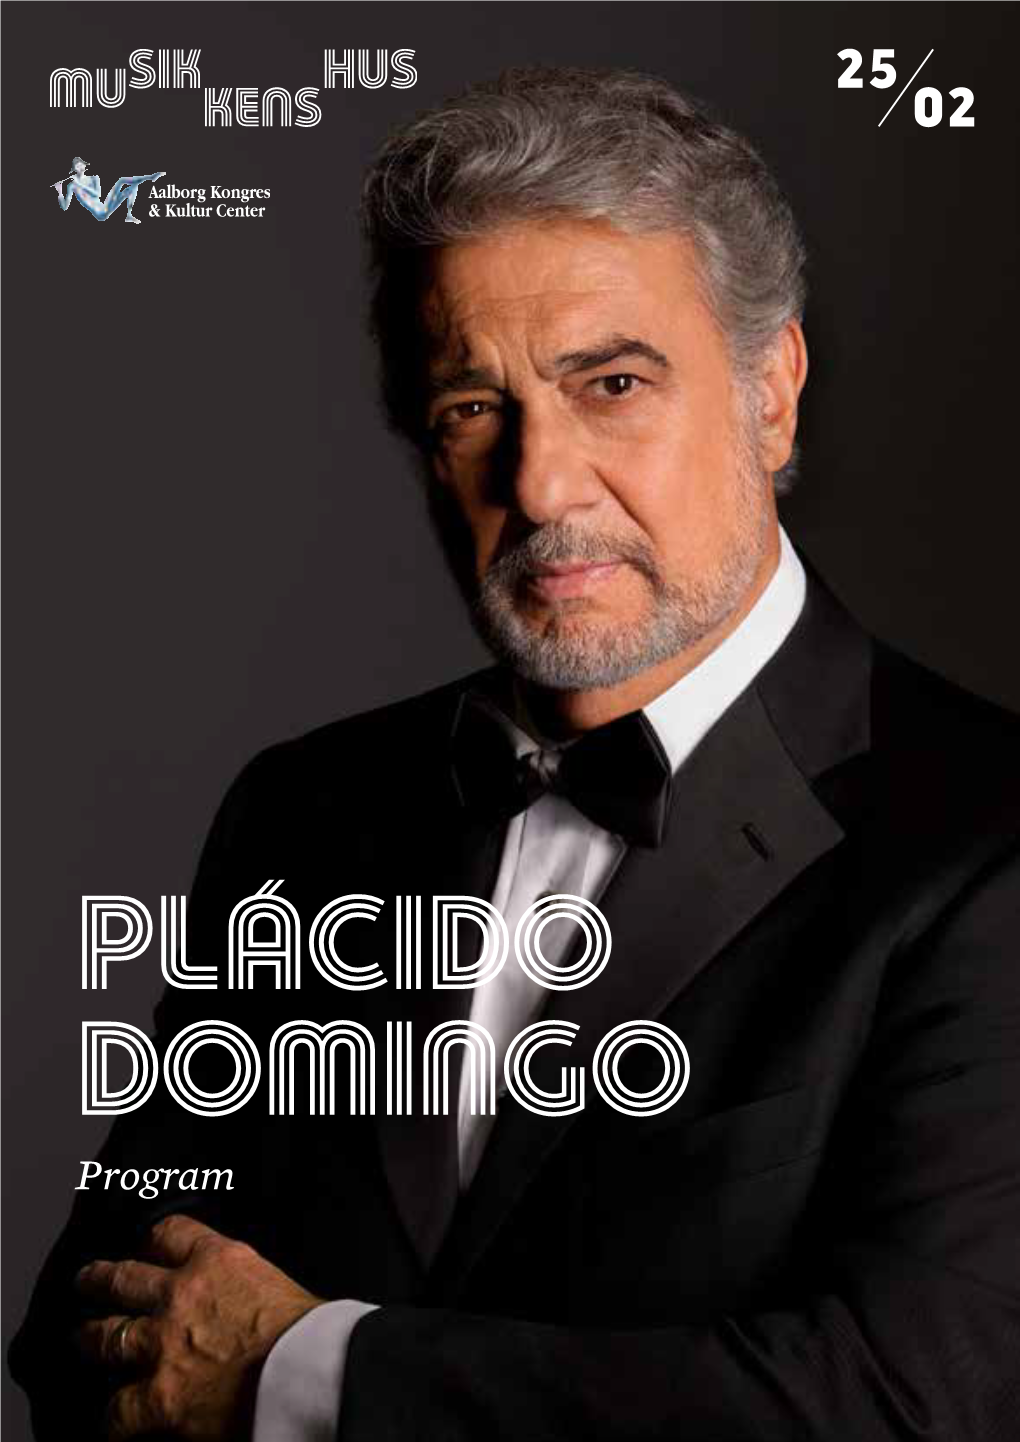 PLÁCIDO DOMINGO Program PROGRAM